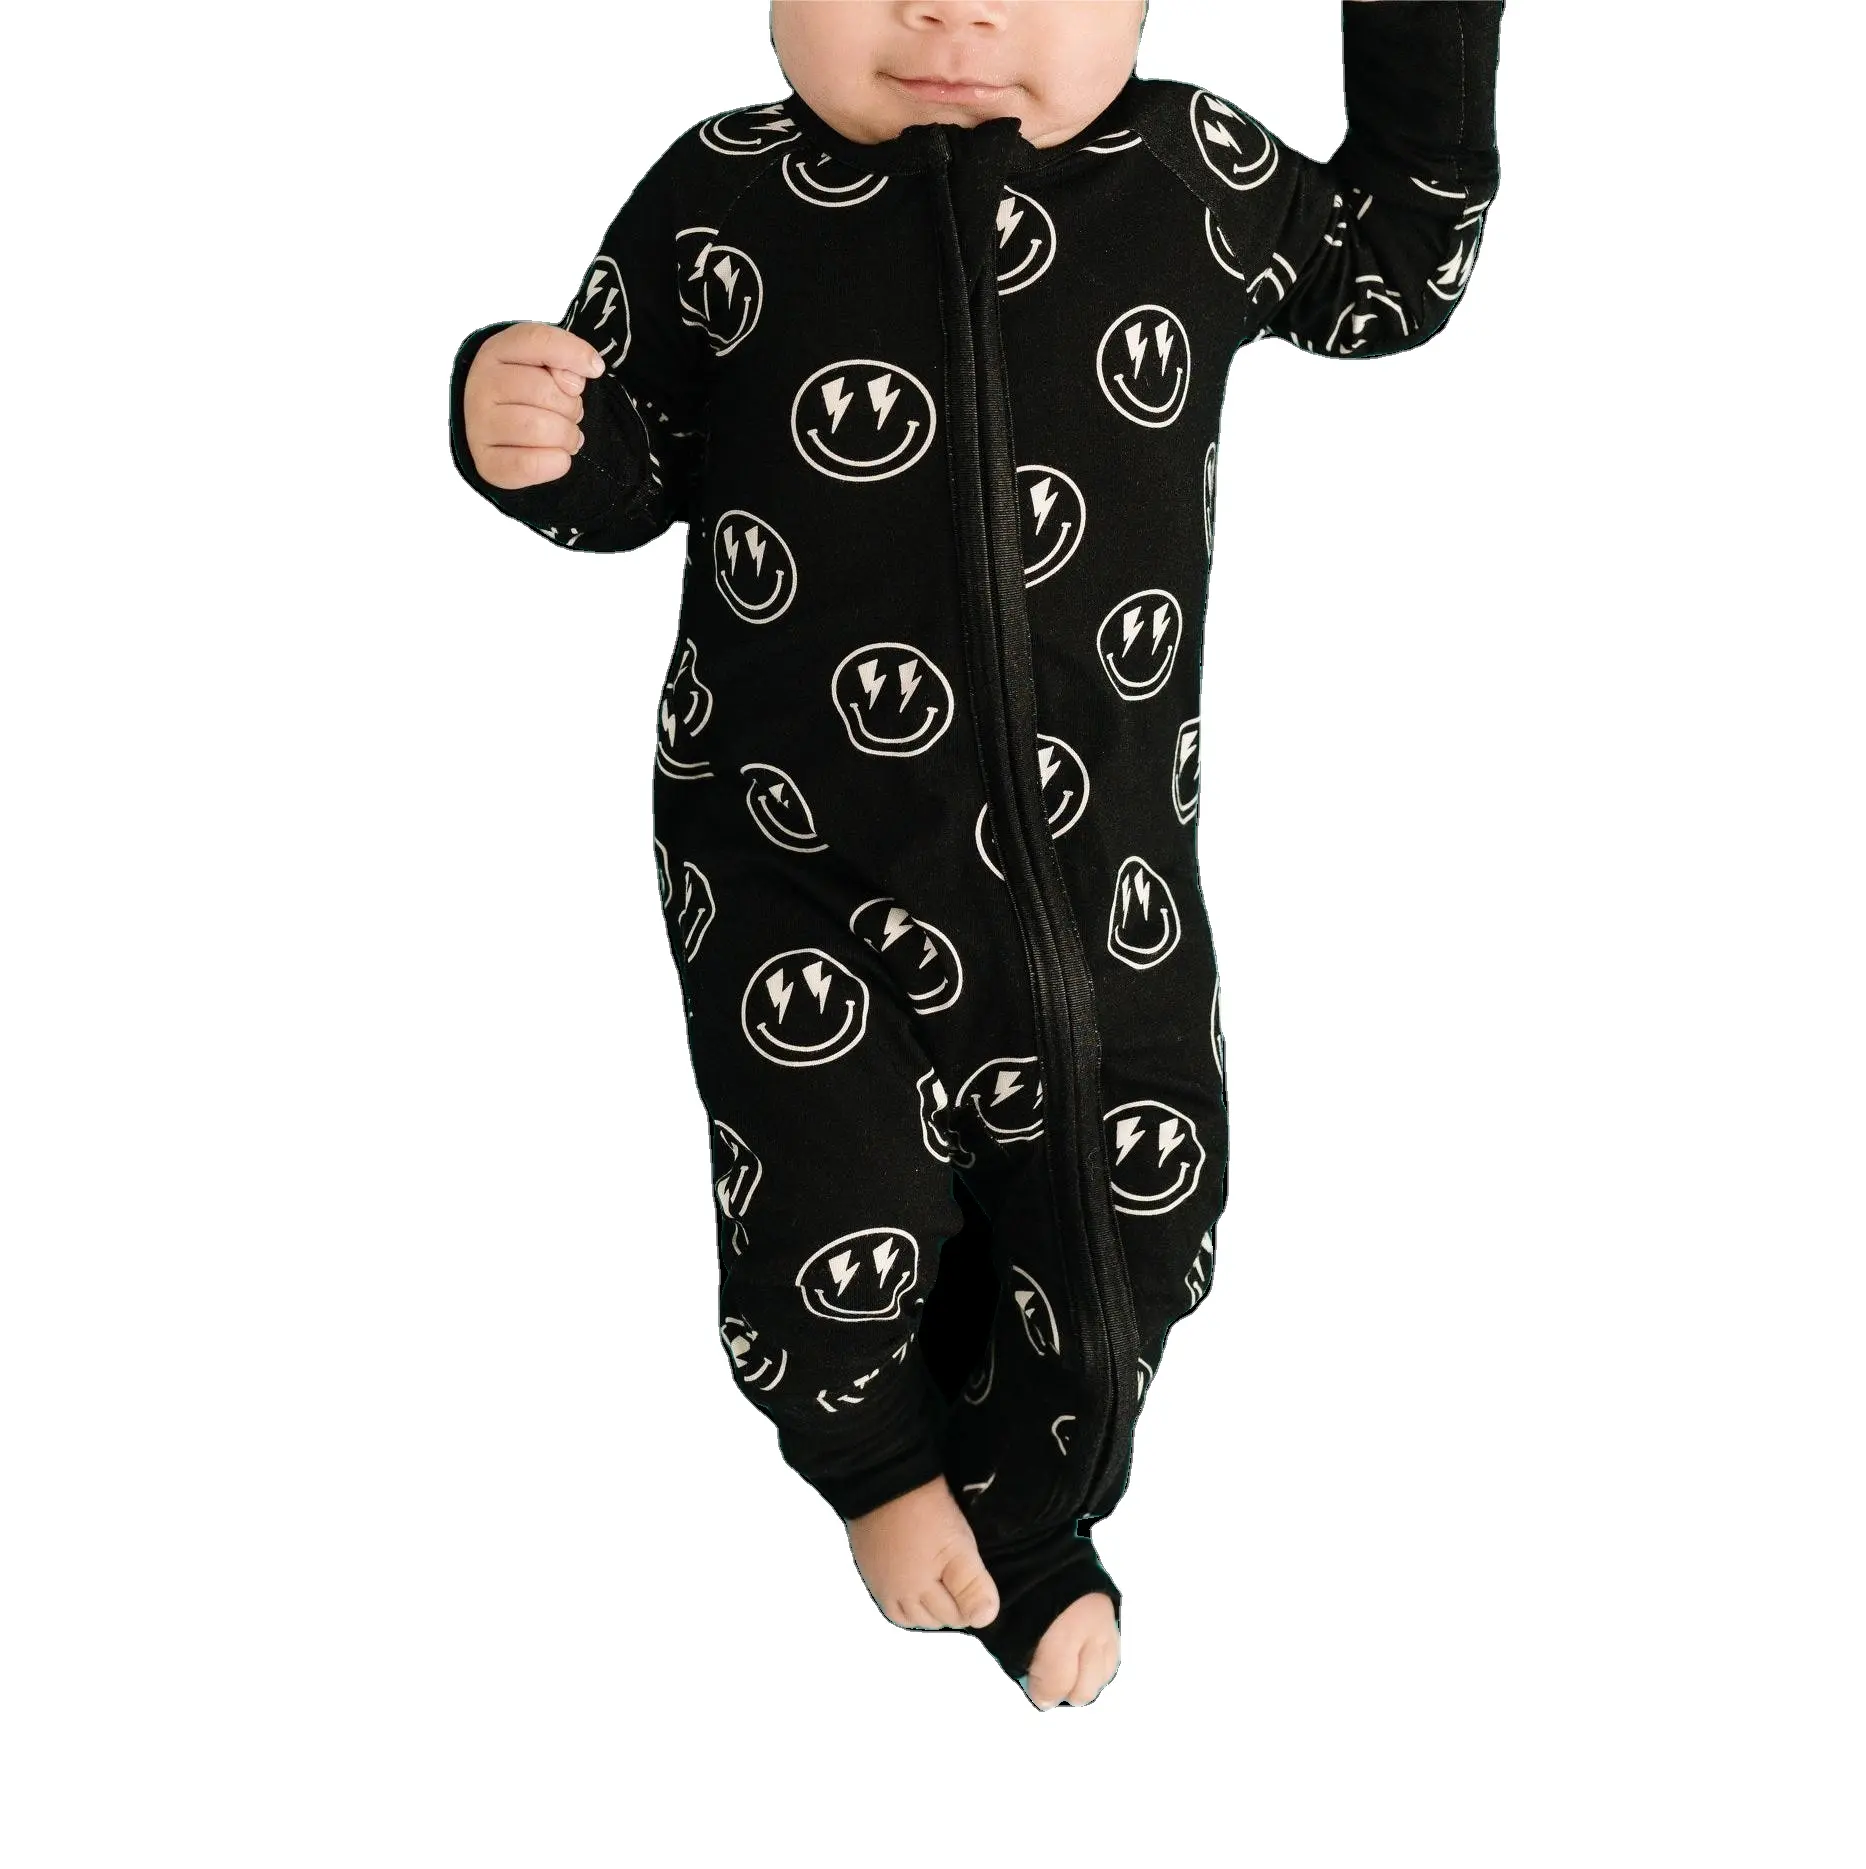 Impression personnalisée sourire bébé vêtements infantile barboteuse orgnaic bambou fermeture éclair bébé barboteuse infantile sleepsuit nouveau-né bambou onesie pyjamas